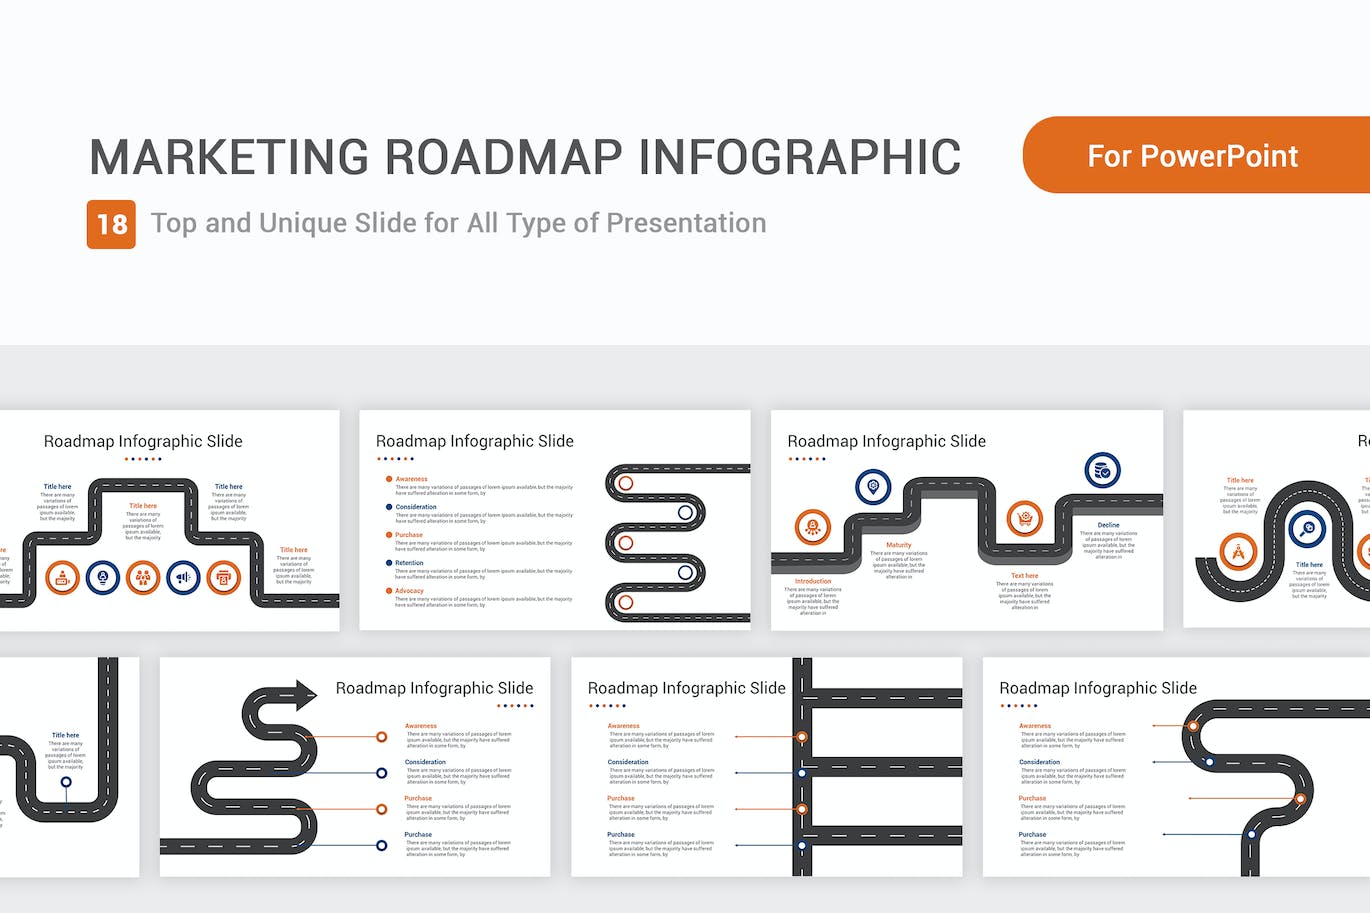 营销路线图信息图表PPT幻灯片模板下载 Marketing Roadmap Infographic PowerPoint Template 幻灯图表 第1张